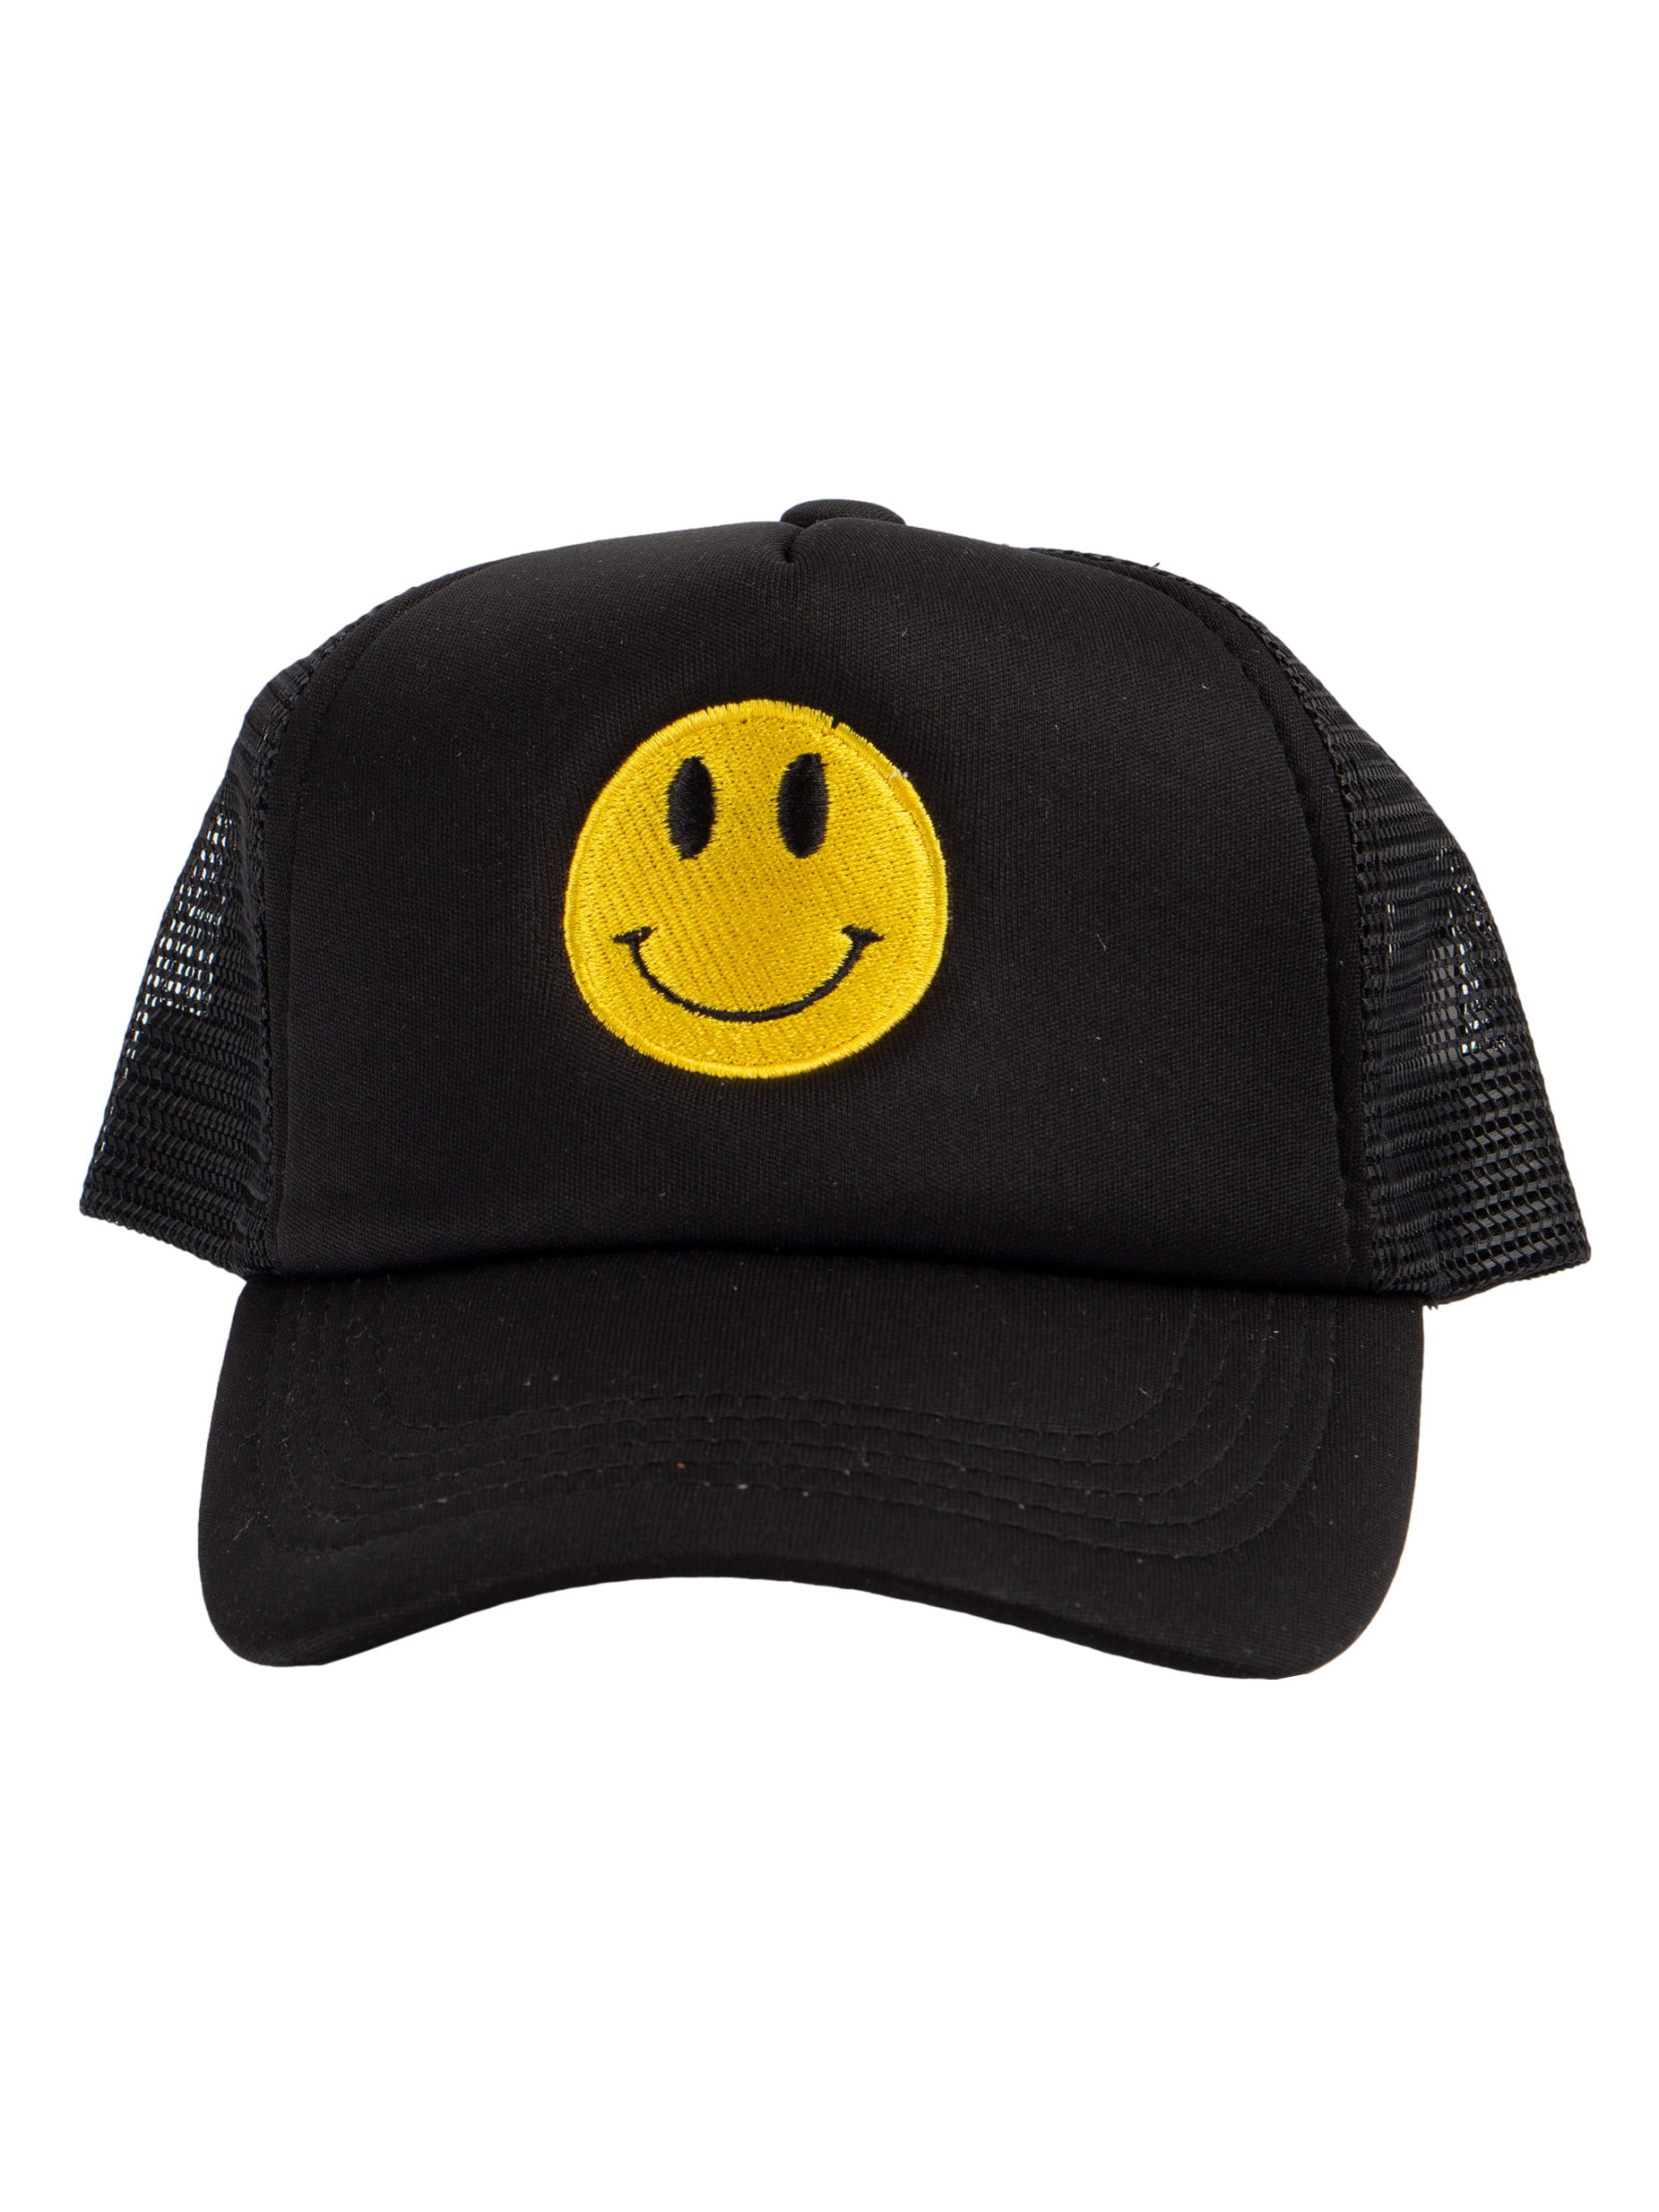 Top Headwear Youth Unisex Kids Snapback Smile Trucker Cap, Black/White